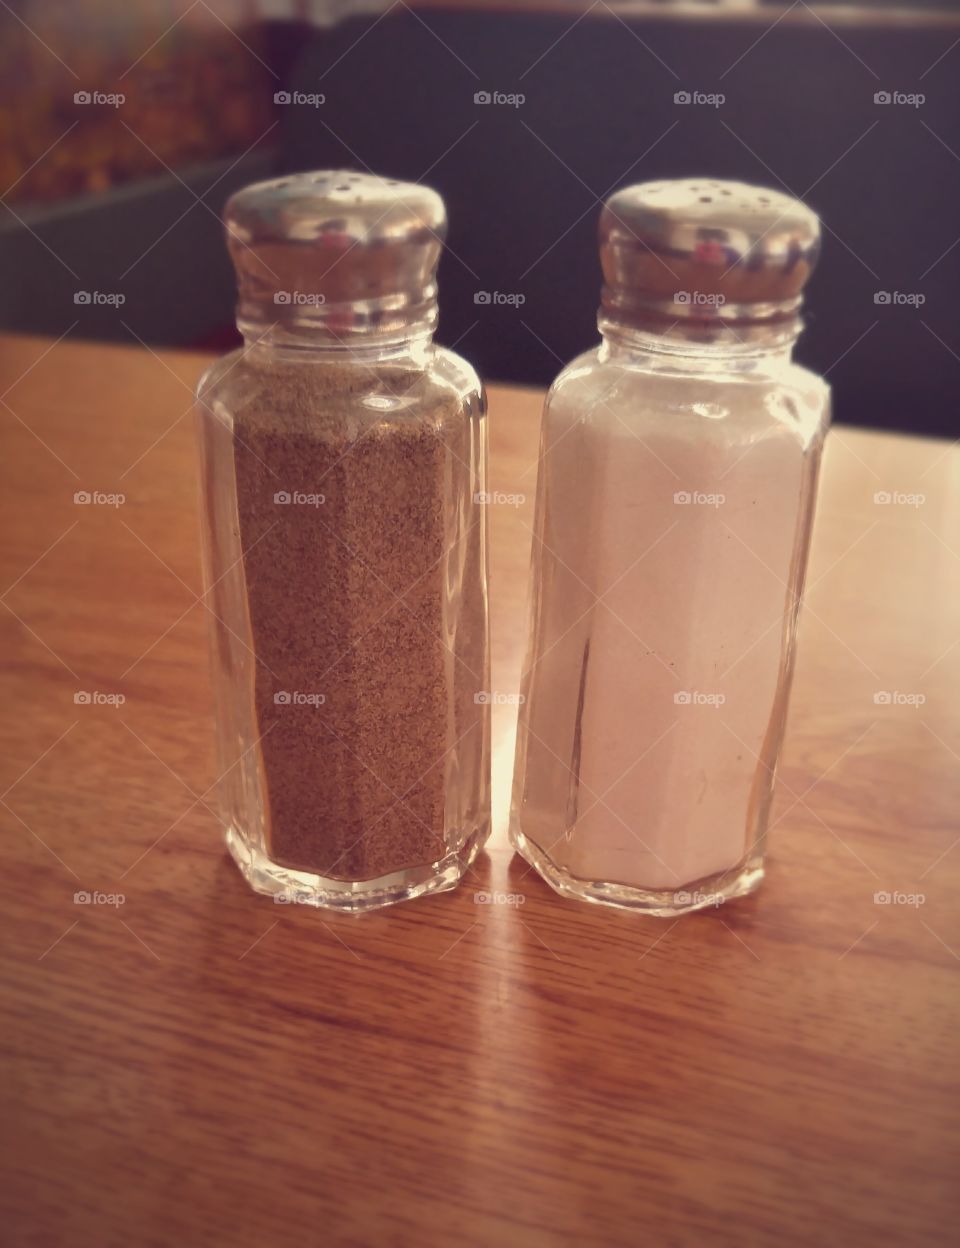 Salt + Pepper